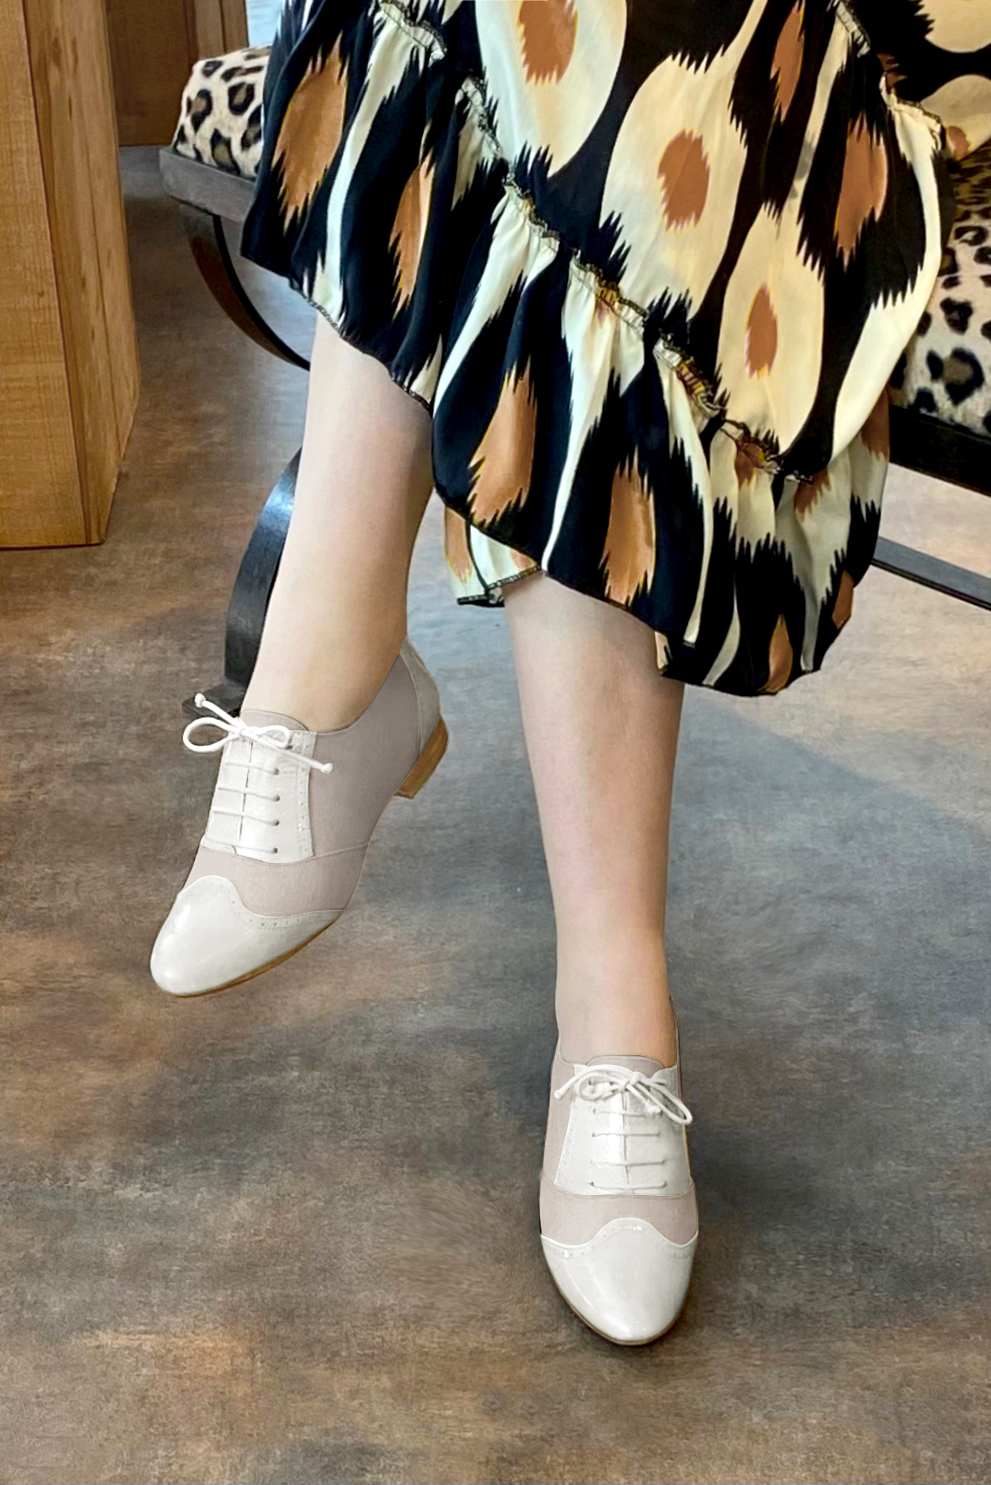 Chaussure femme à lacets : Derby original couleur blanc cassé et beige naturel.. Vue porté - Florence KOOIJMAN